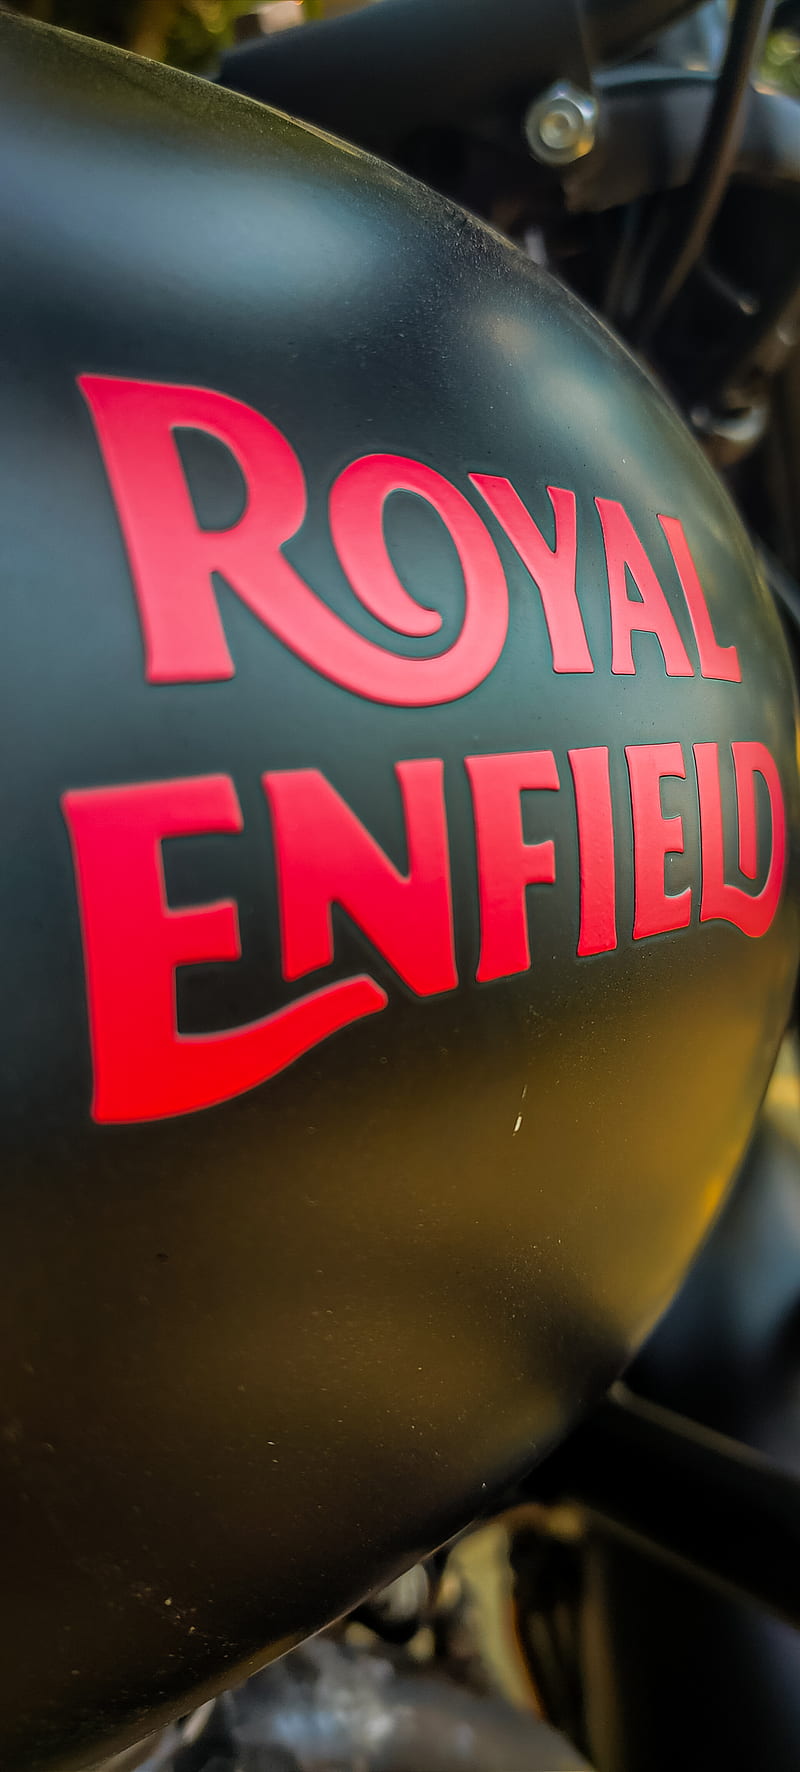 Royal enfield, royal enfield, uday, classic, road, meter, kirti,  speedometer, HD phone wallpaper | Peakpx